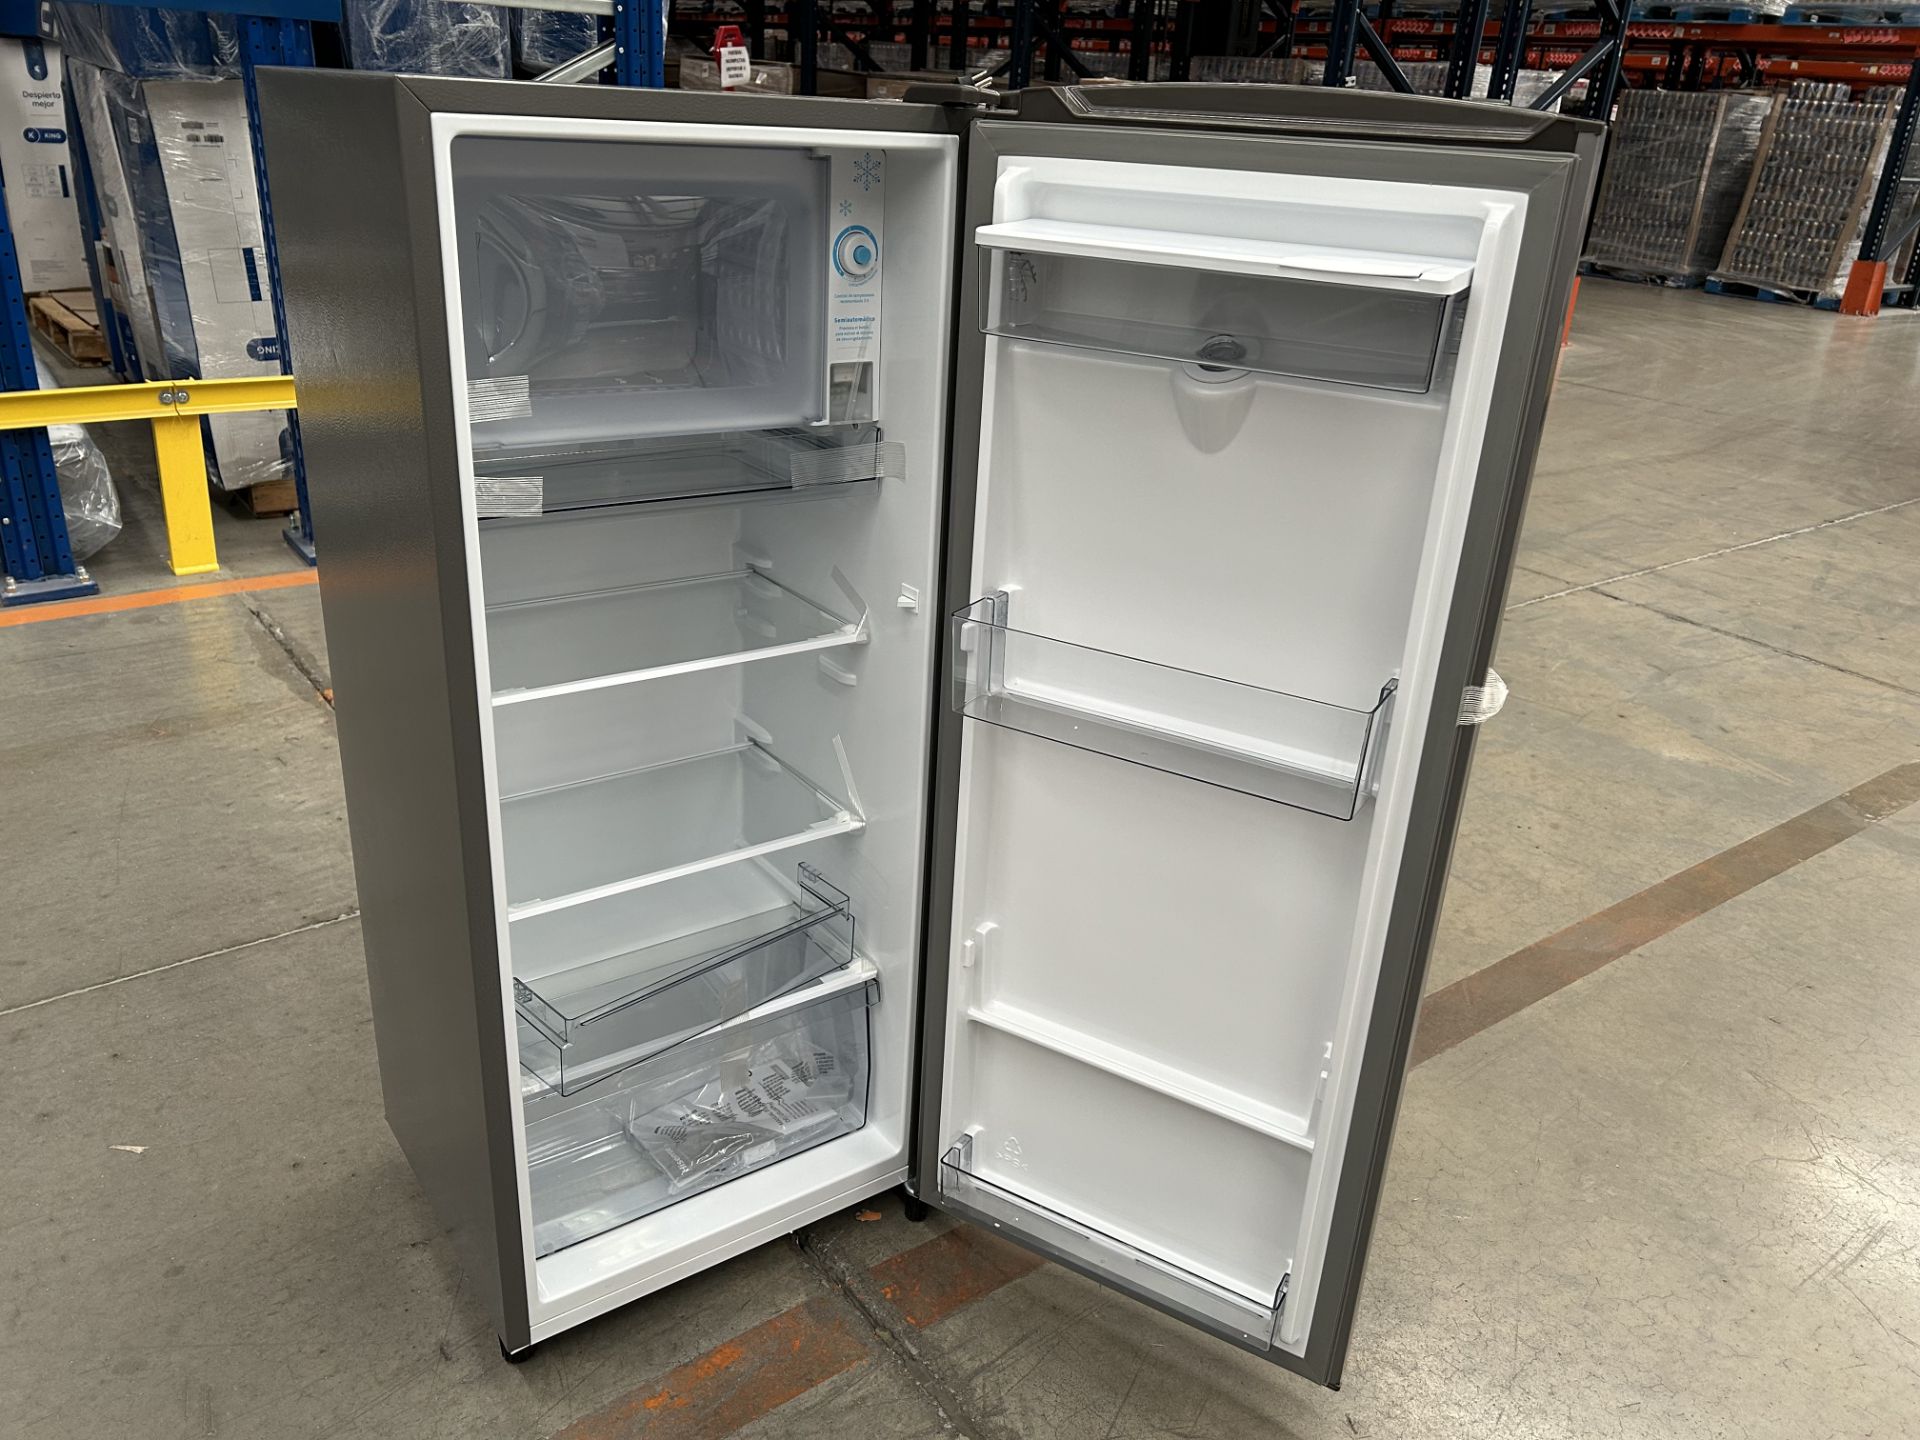 Lote de 2 refrigeradores contiene: 1 Refrigerador con dispensador de agua Marca HISENSE, Modelo RR6 - Image 6 of 7